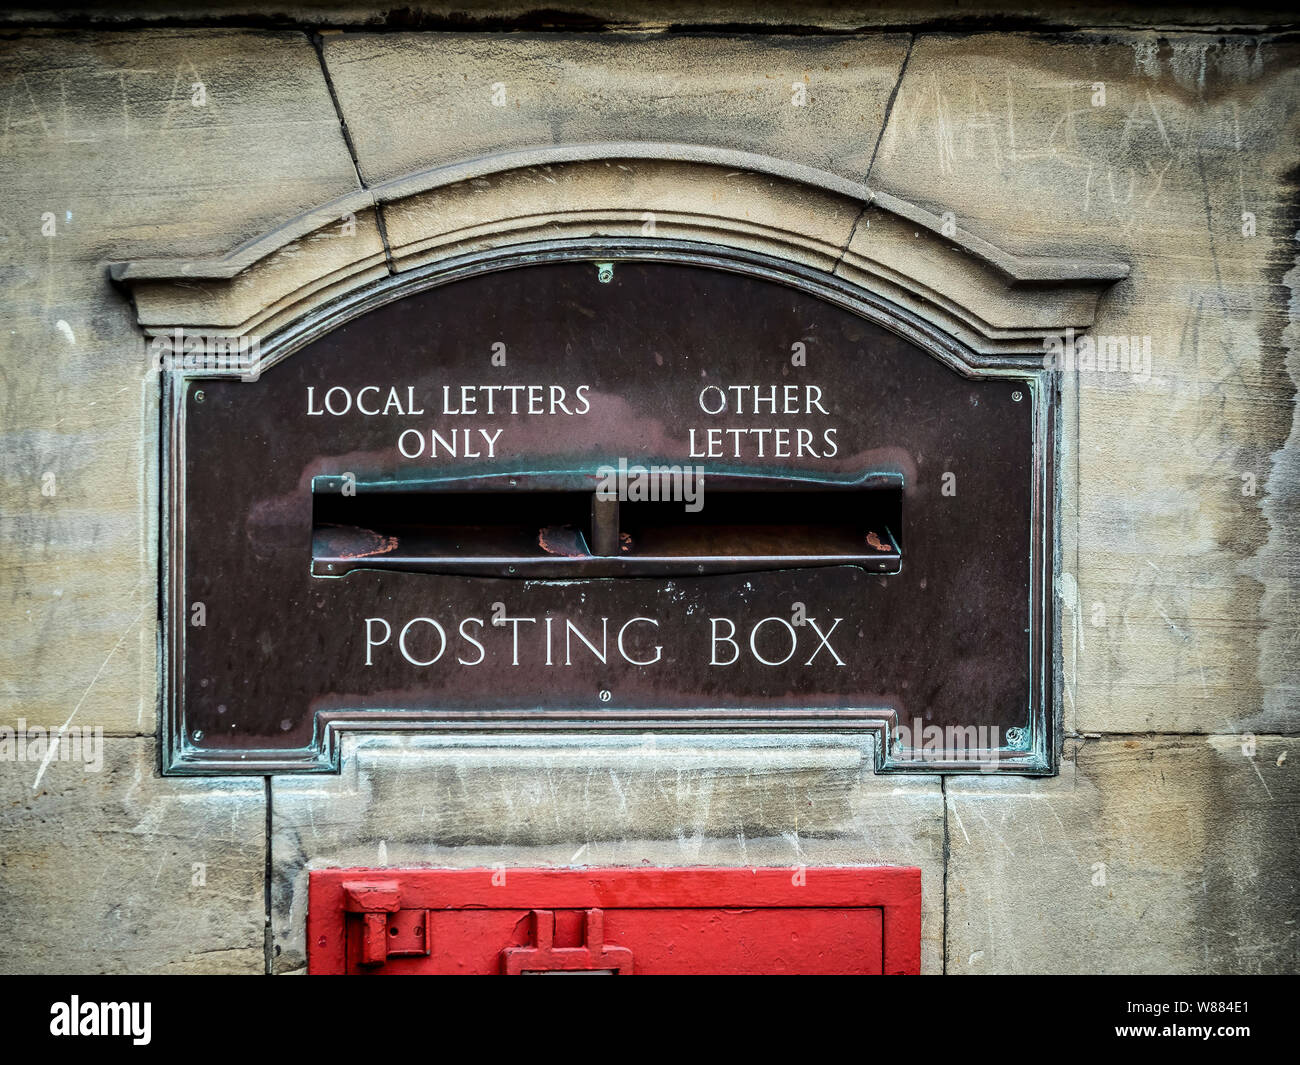 Cuadro de contabilización en Malton market town, North Yorkshire, con ranuras para letras locales y otras cartas Foto de stock